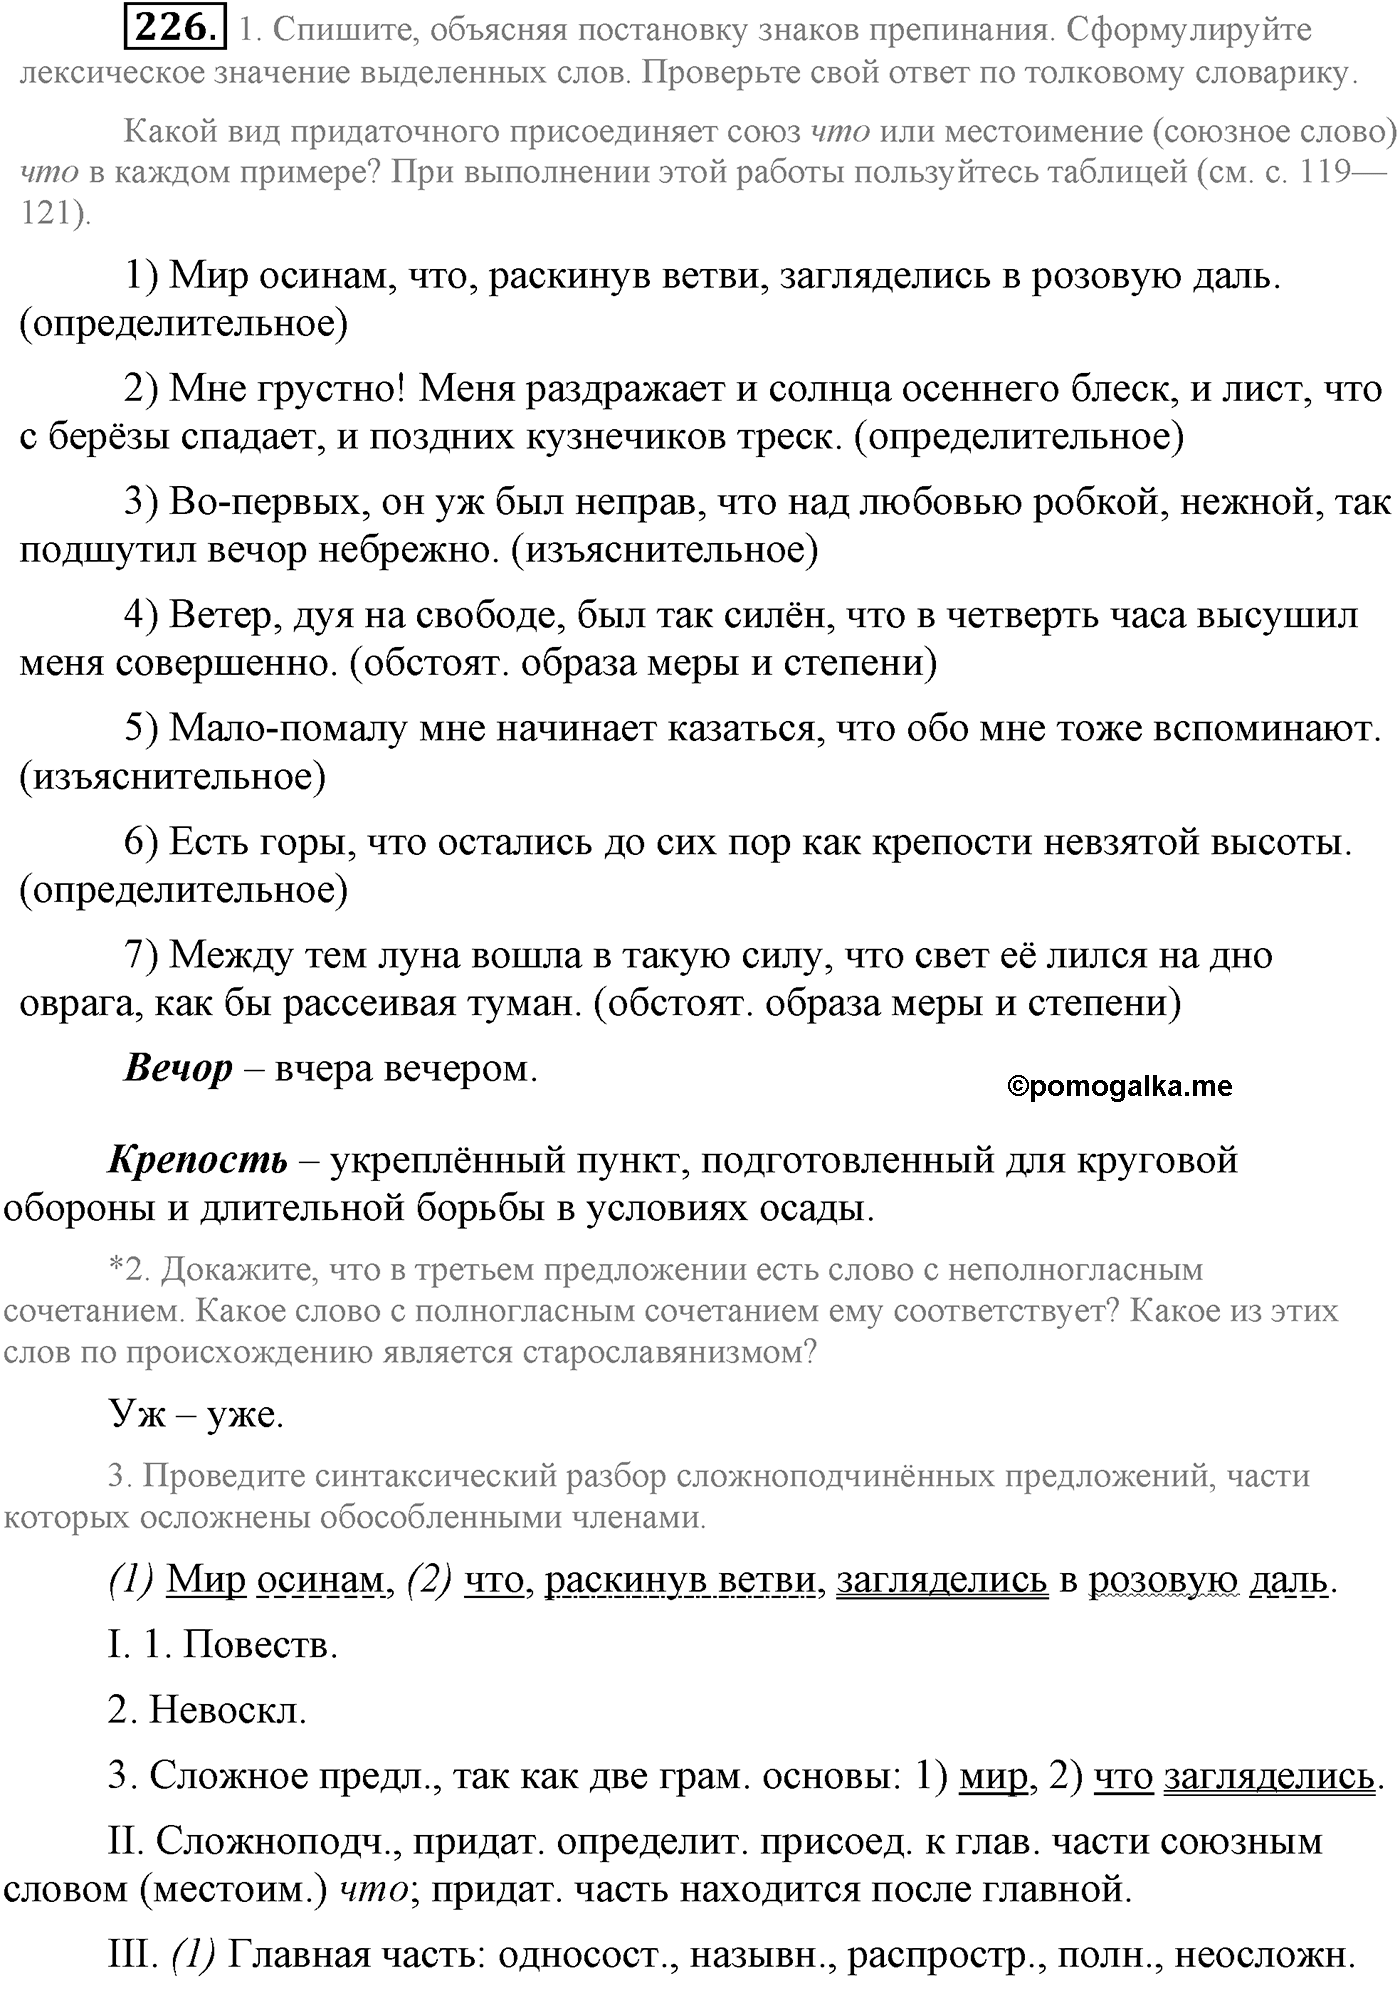 упражнение №226 русский язык 9 класс Львова